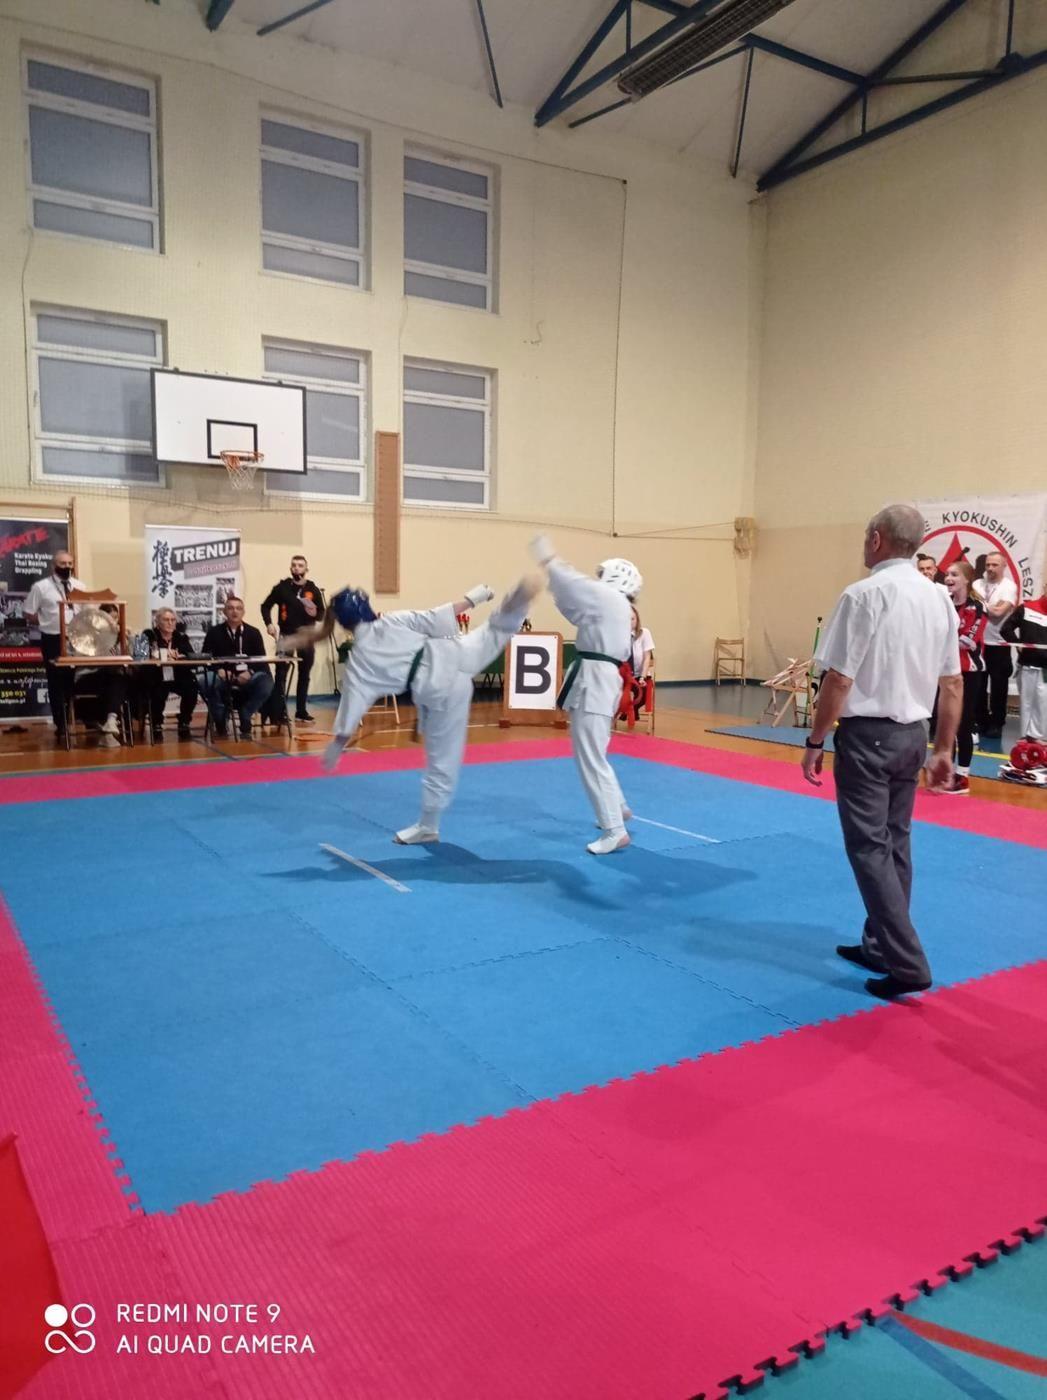 Ogólnopolski Turniej Karate Kyokushin w Brennie, zawodnicy na macie - kliknięcie spowoduje powiększenie obrazka